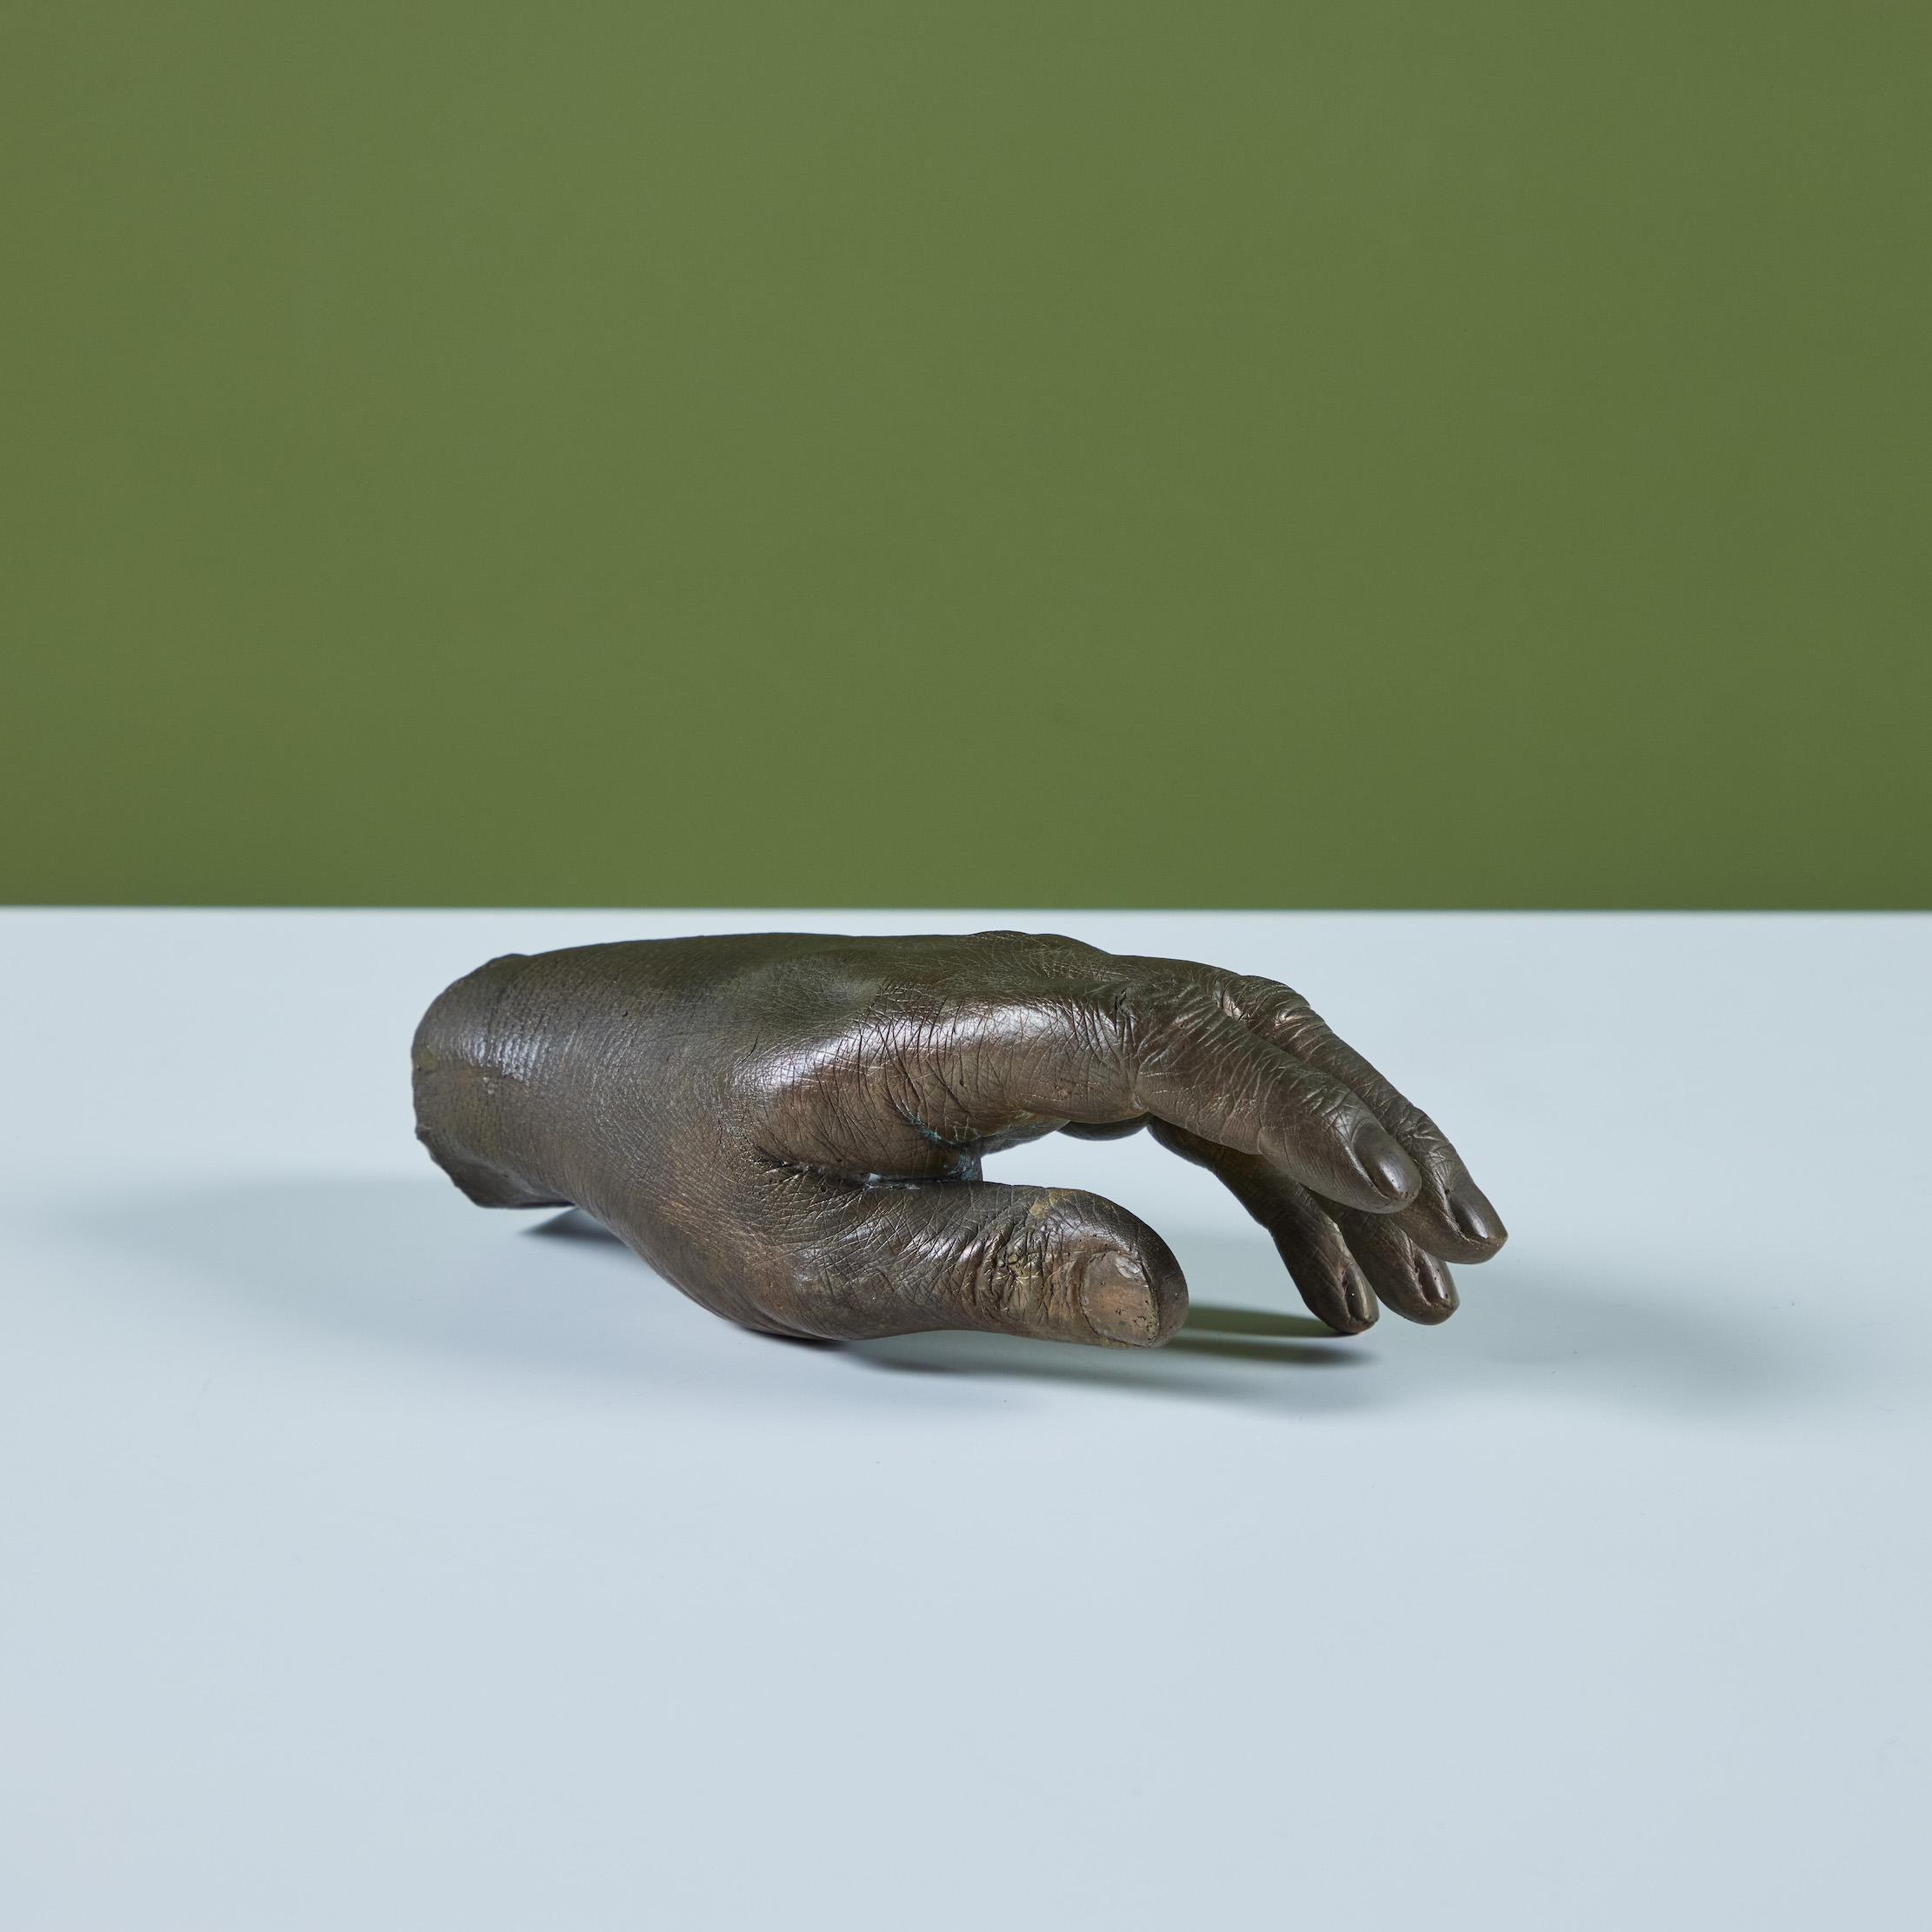 Main en bronze coulé dans le style de Pietrina Checcacci. La main est creuse et présente de nombreux détails complexes au niveau des articulations et des ongles des doigts. Conçu pour être perché sur une surface plane et positionné comme on le